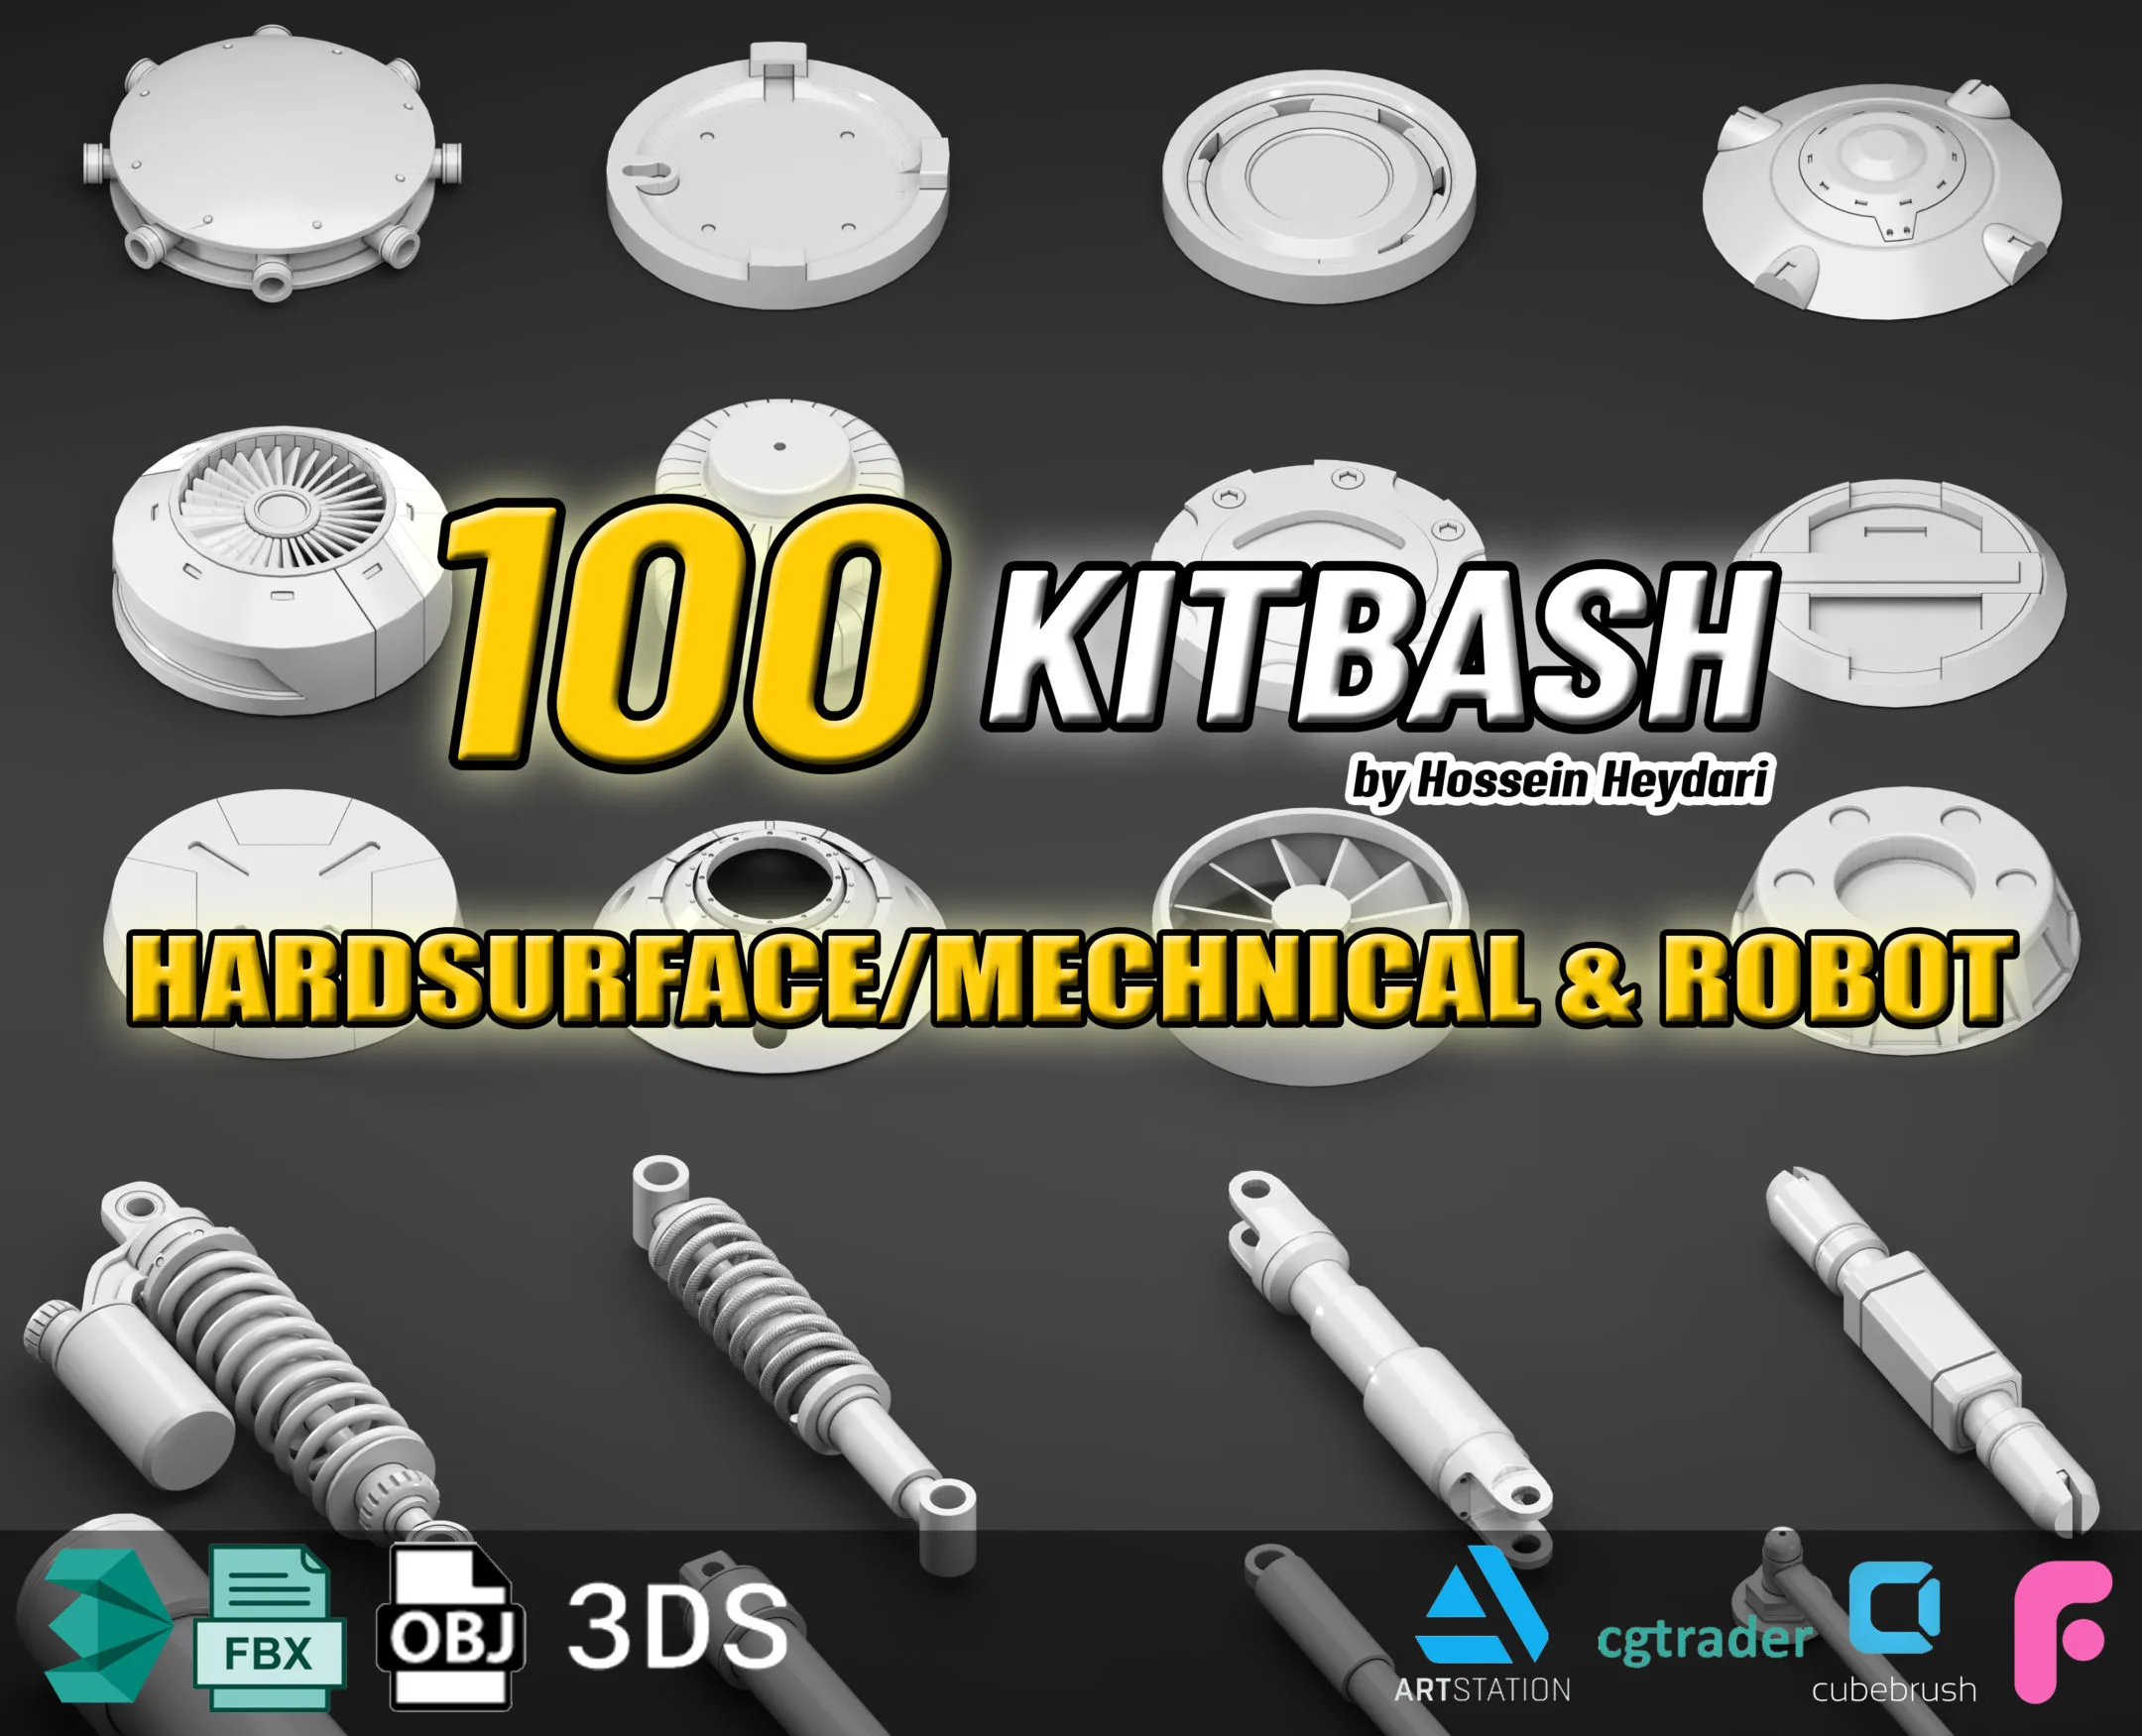 100 Kitbash Mechanical and Robot